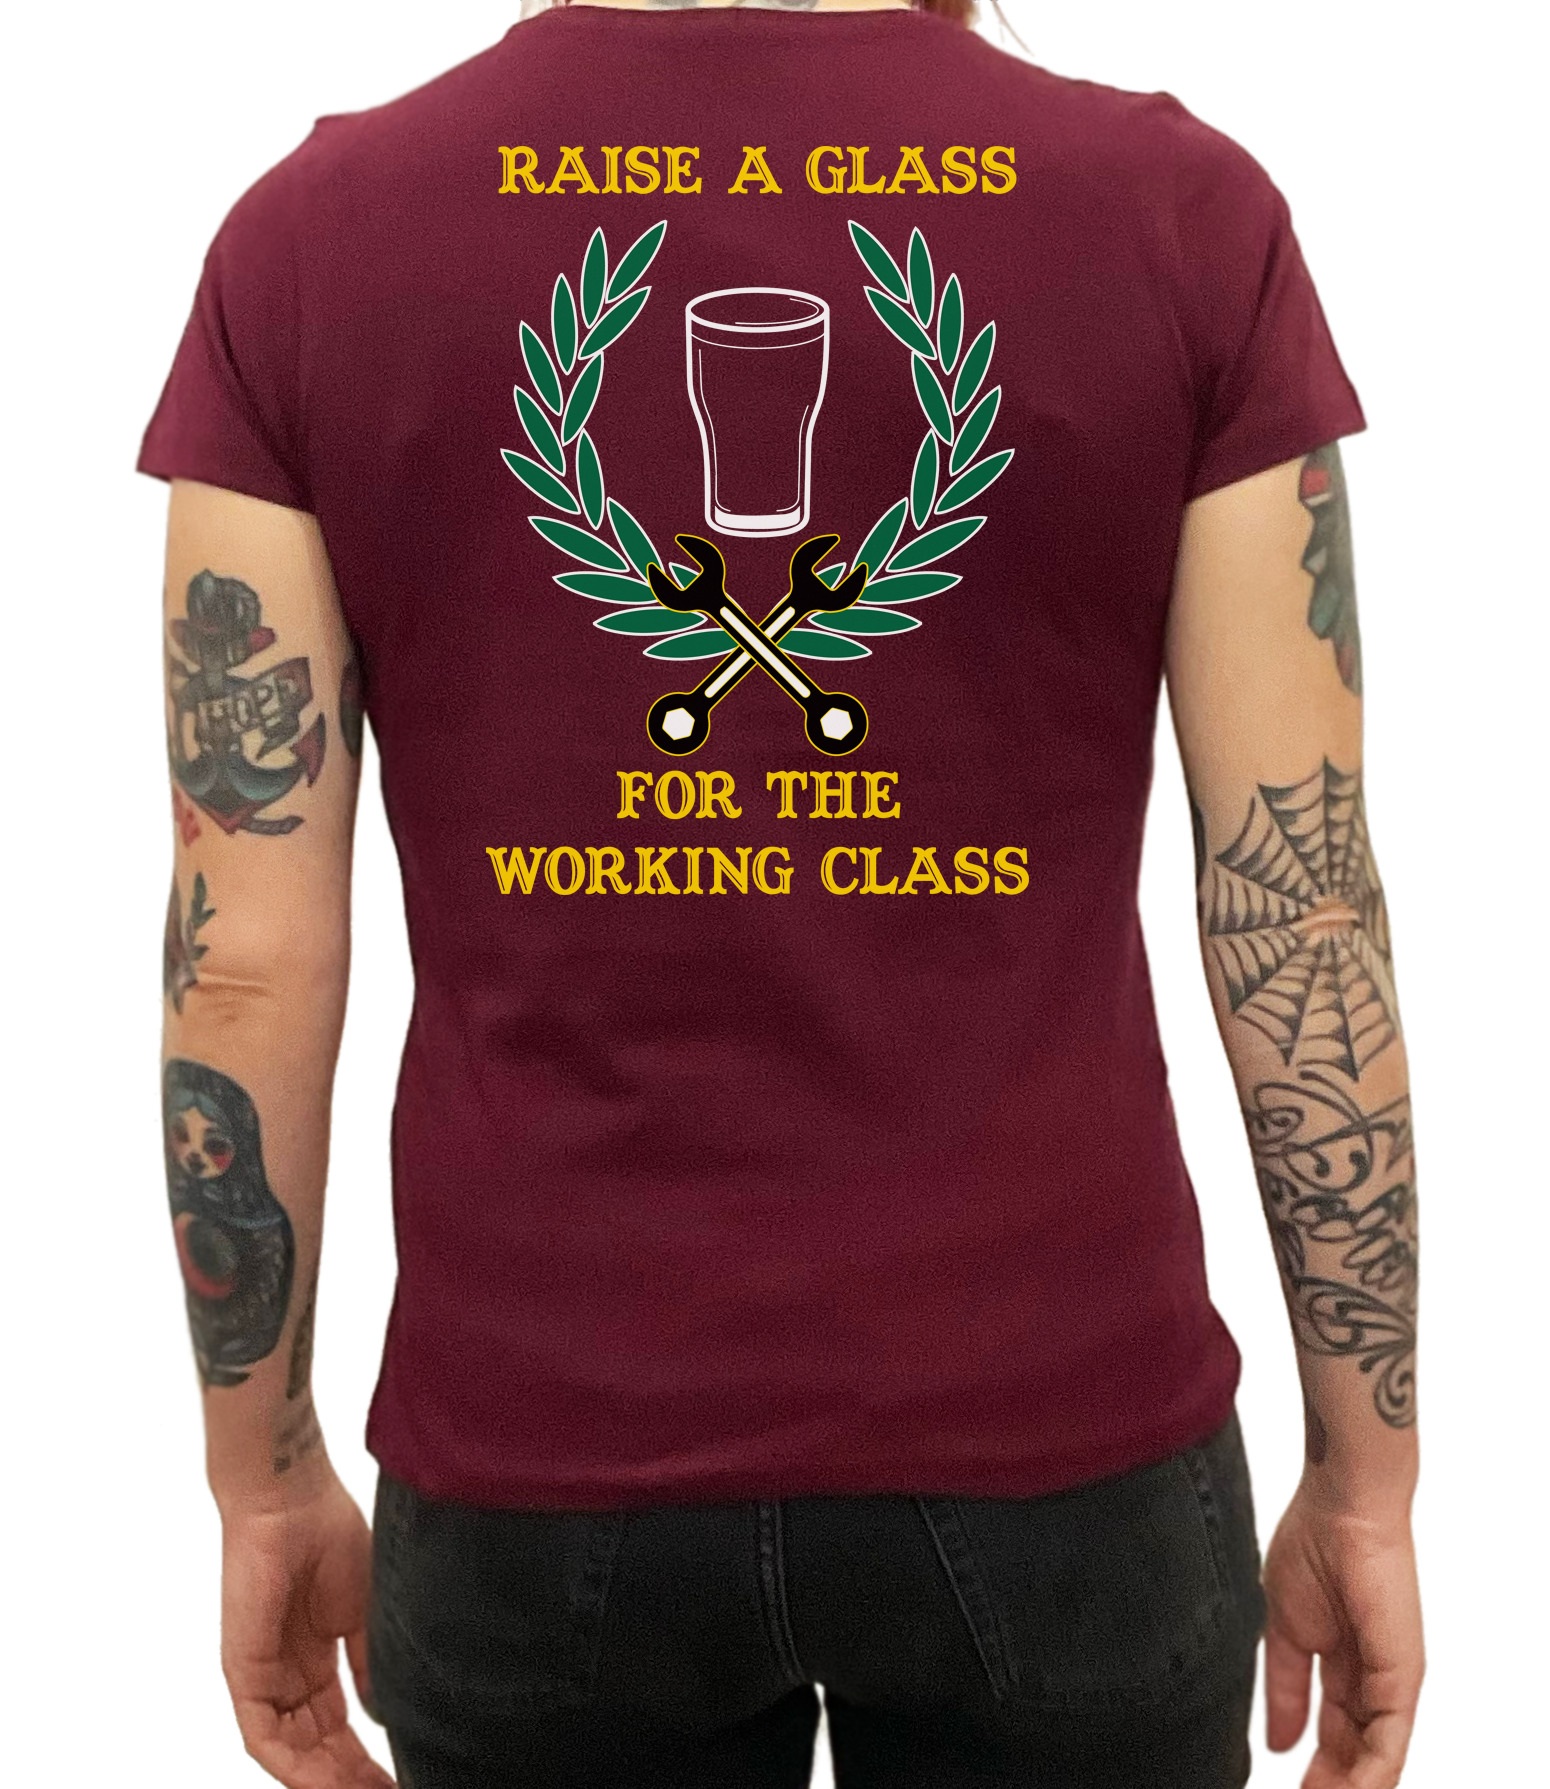 Raise a glass